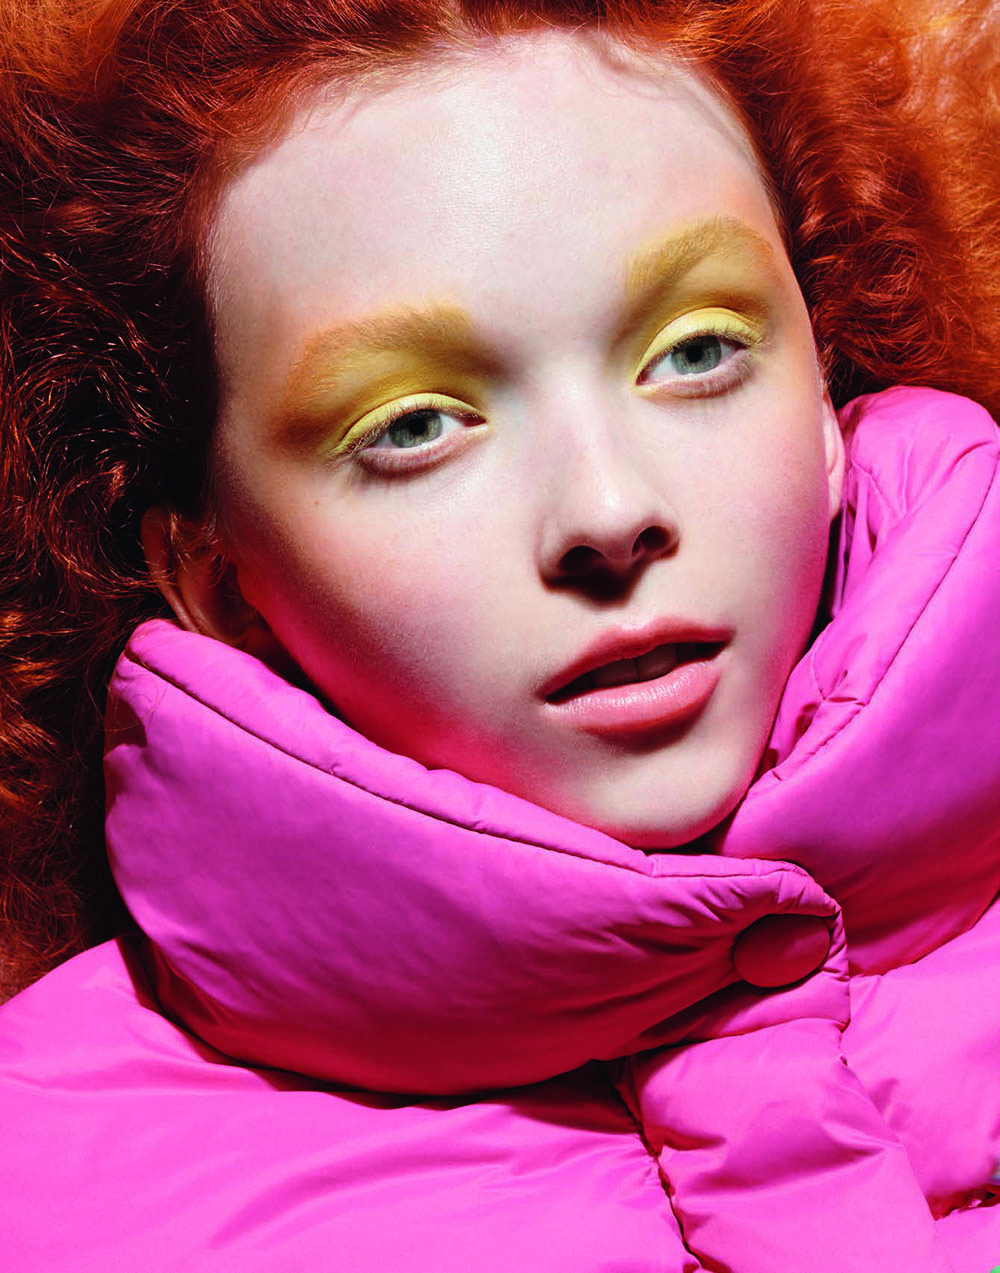 Lily Nova by Liz Collins for Vogue Poland February 2020